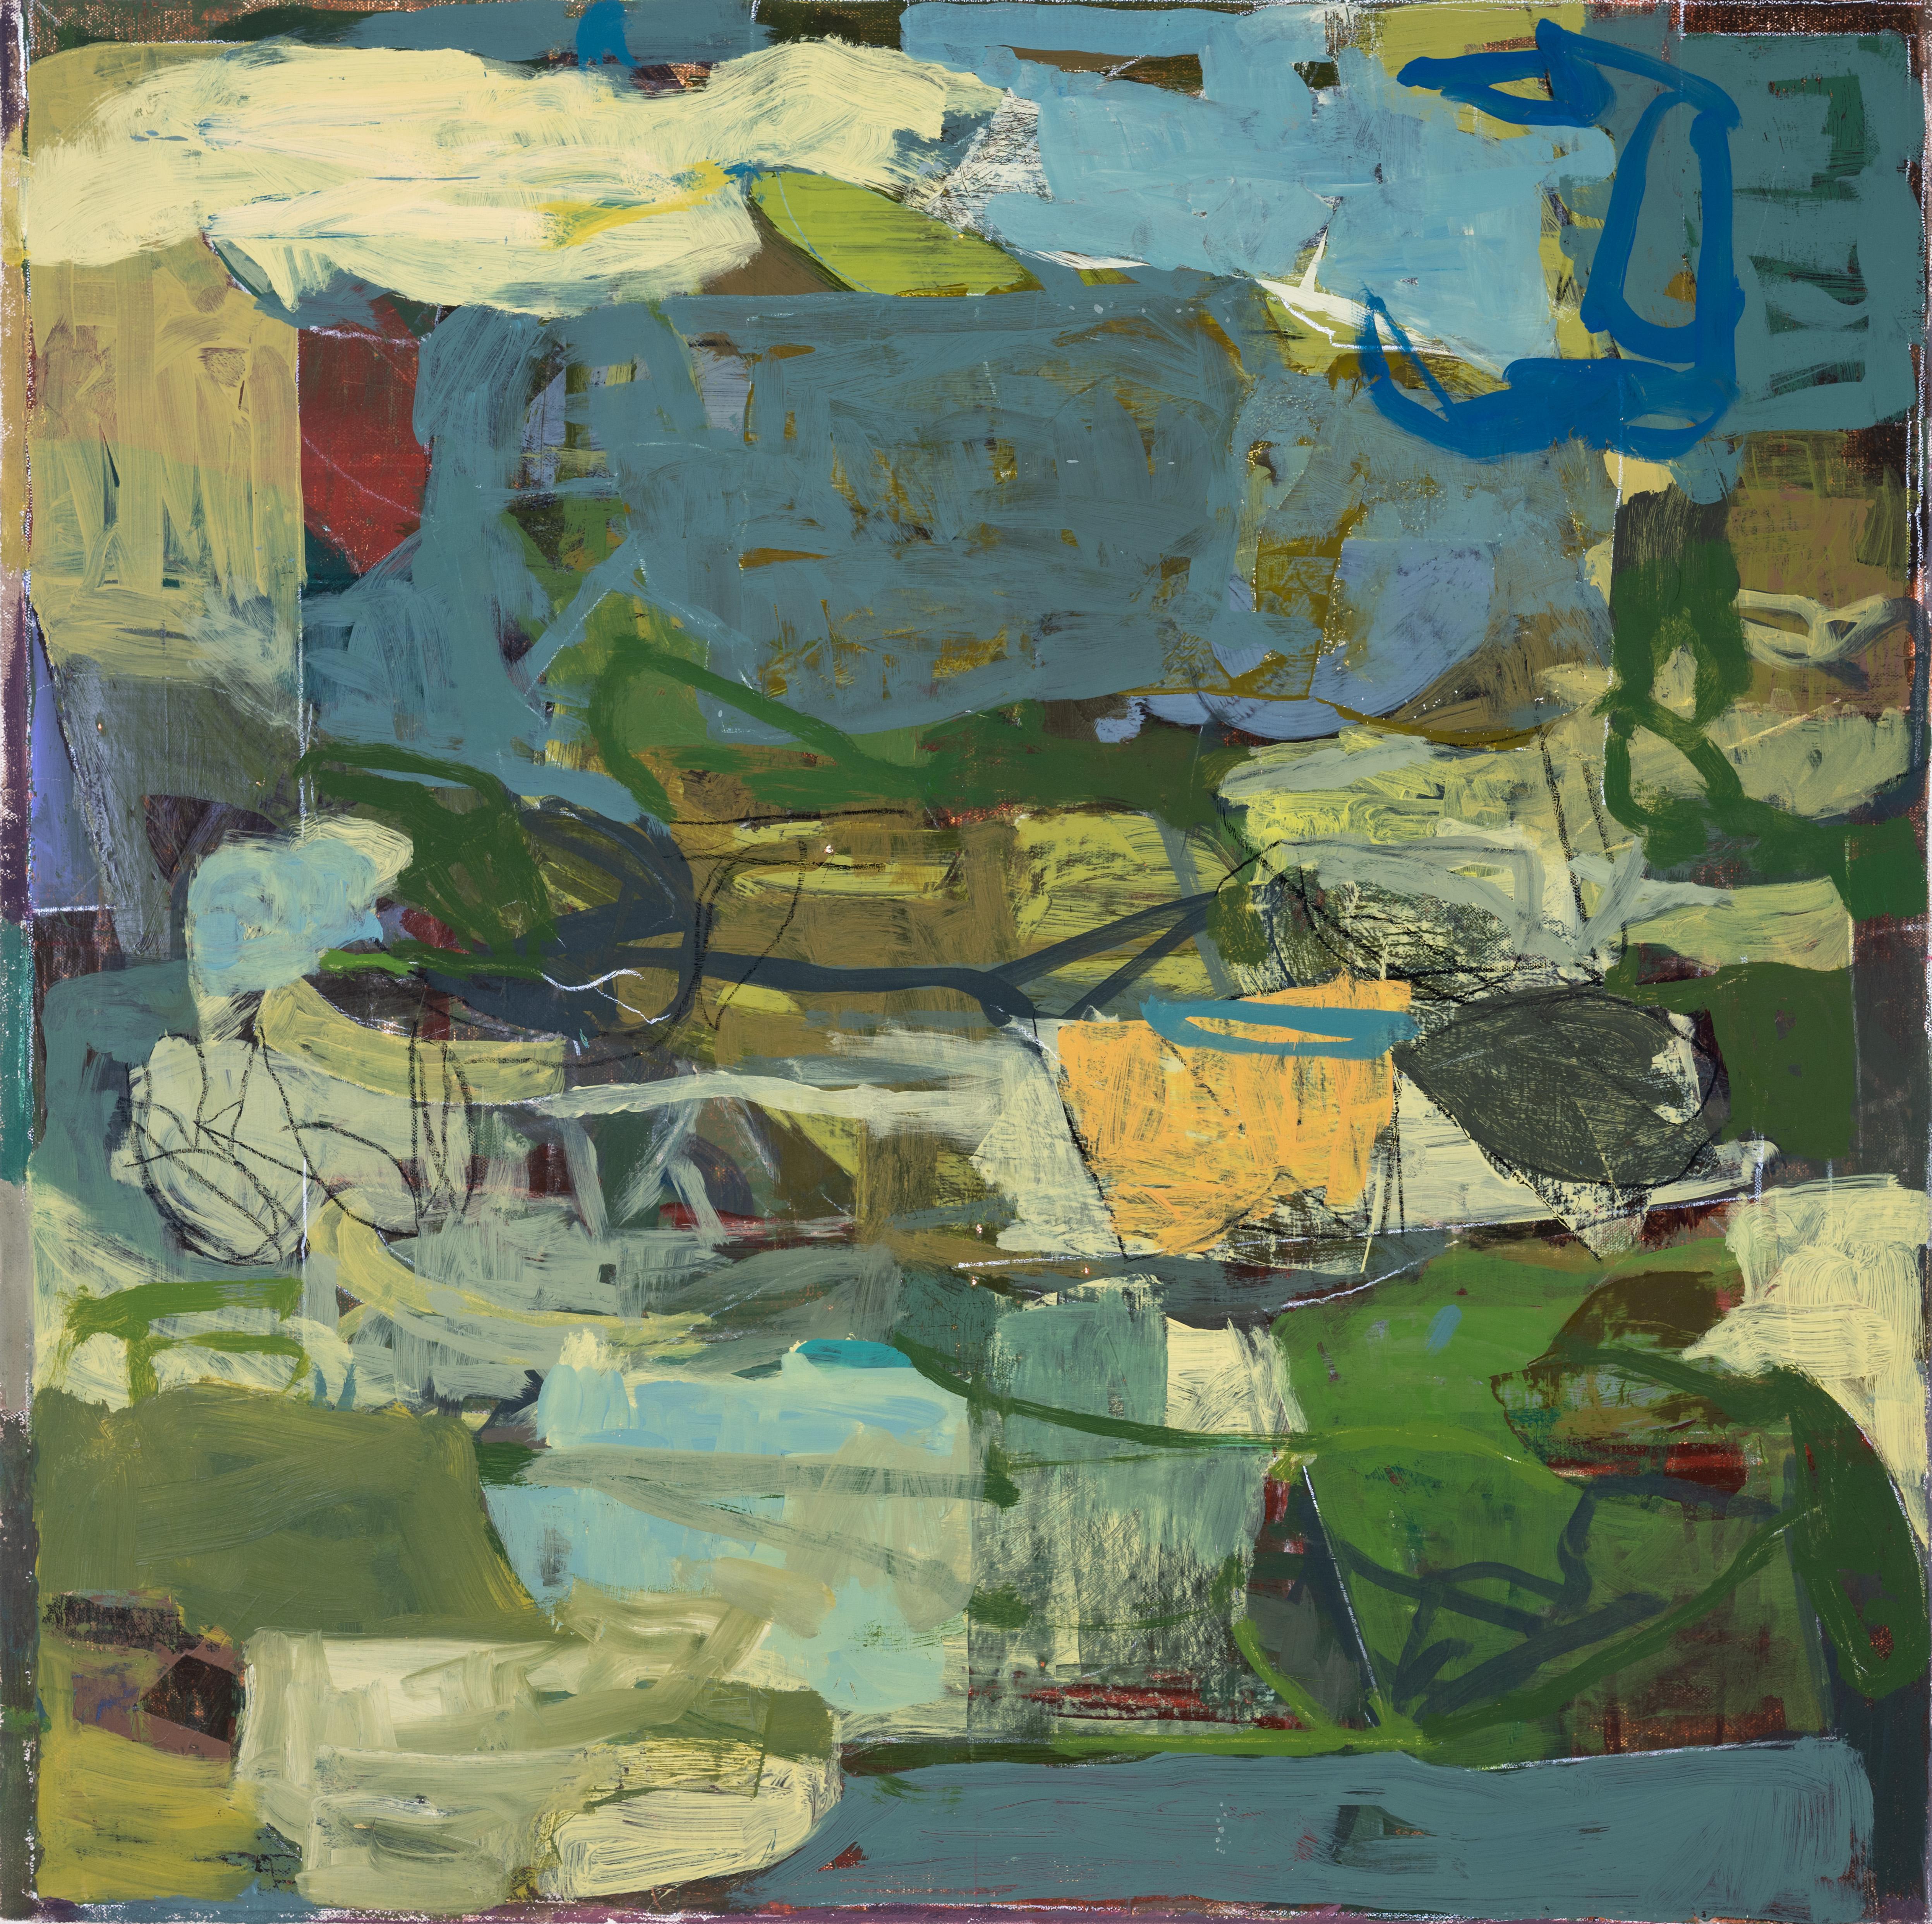 Le 29 mai (peinture à l'huile expressionniste abstraite dans des tons terreux de vert et de bleu) - Painting de James O'Shea